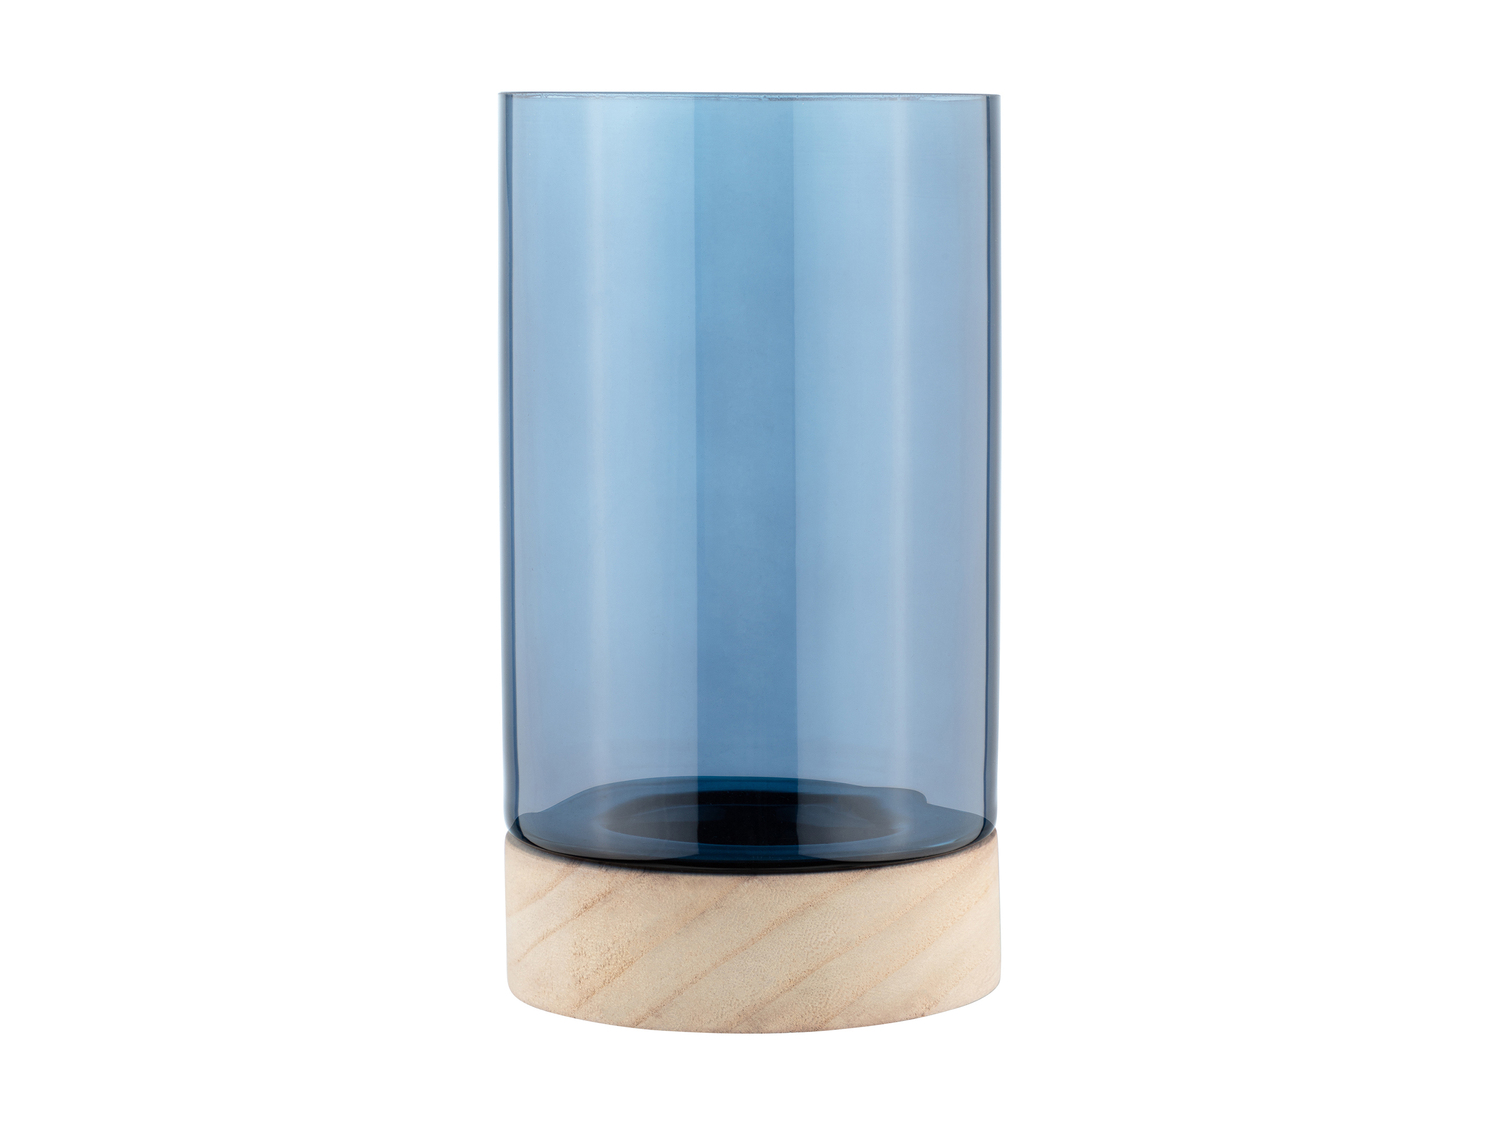 Vaso di vetro Melinera, prezzo 9.99 €  

Caratteristiche